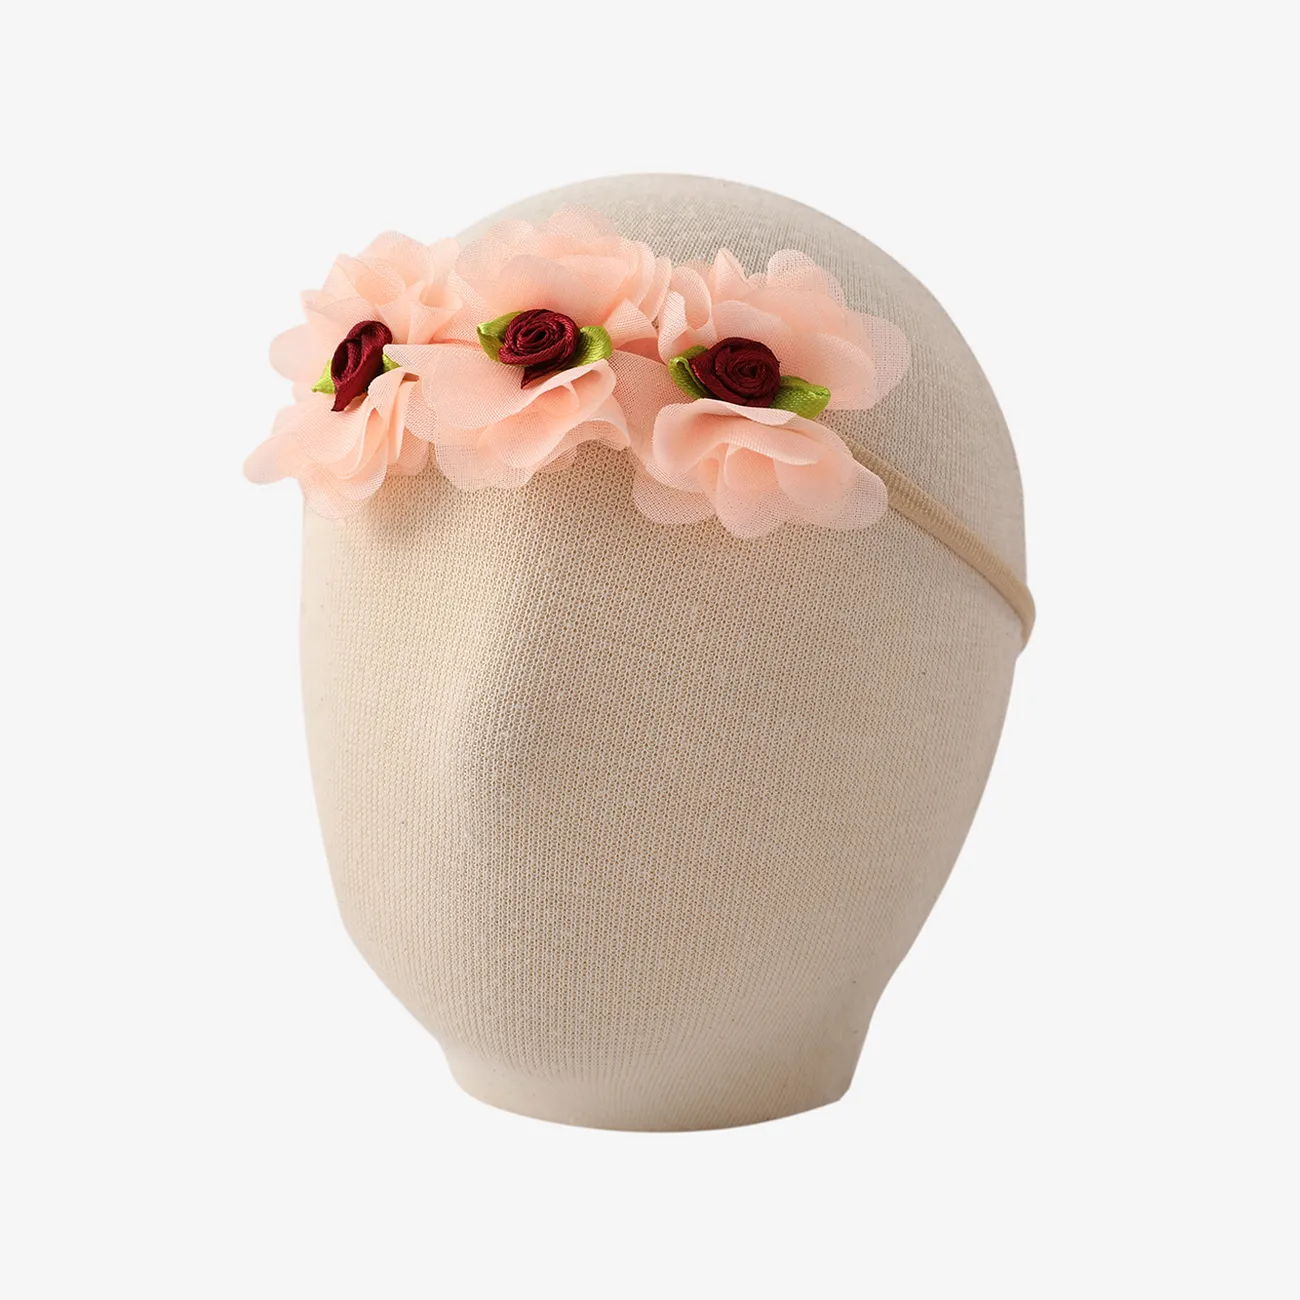 Diadema accesoria para el cabello de flor de rosa dulce para bebés / niños pequeños Coral big image 1